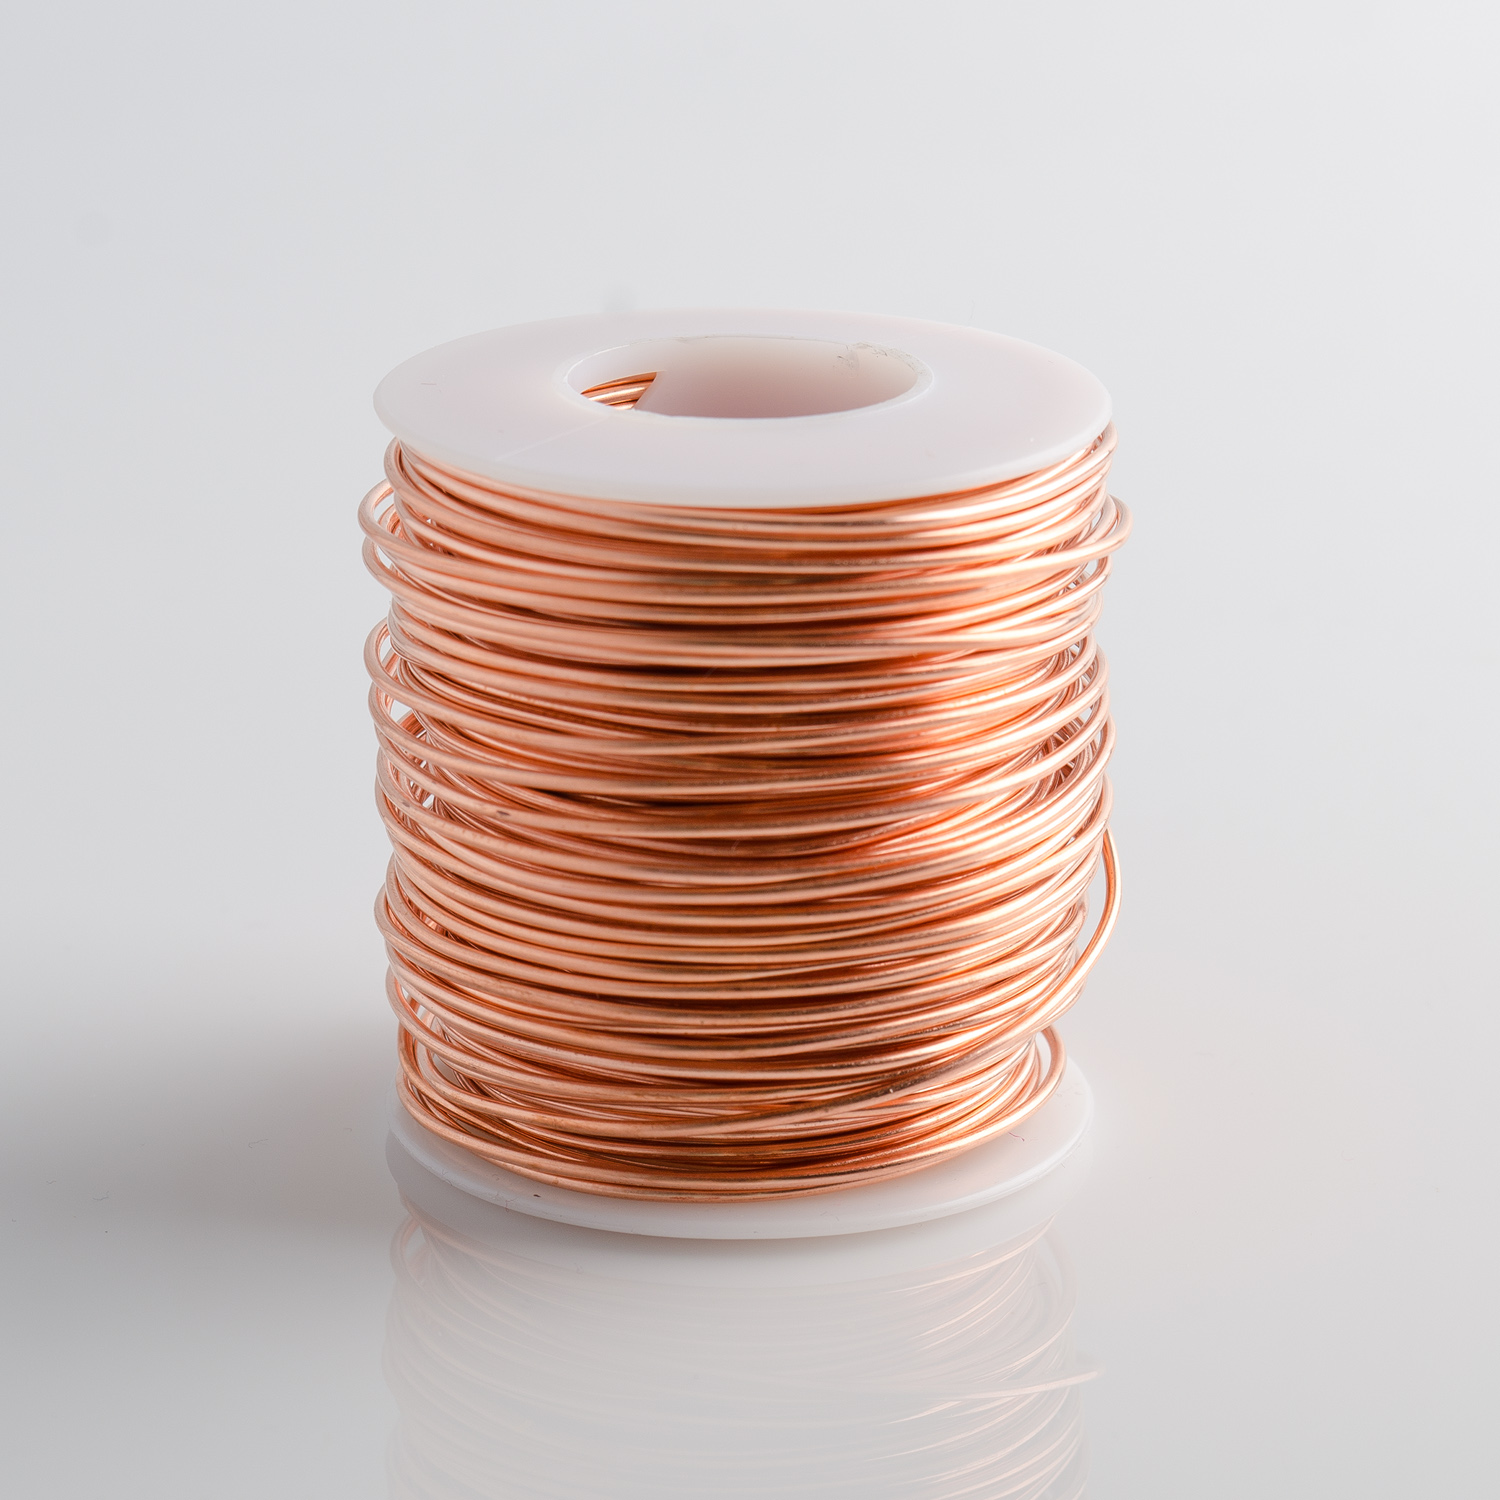 30 Gauge Round Dead Soft Copper Wire - 1LB: Wire Jewelry, Wire Wrap  Tutorials